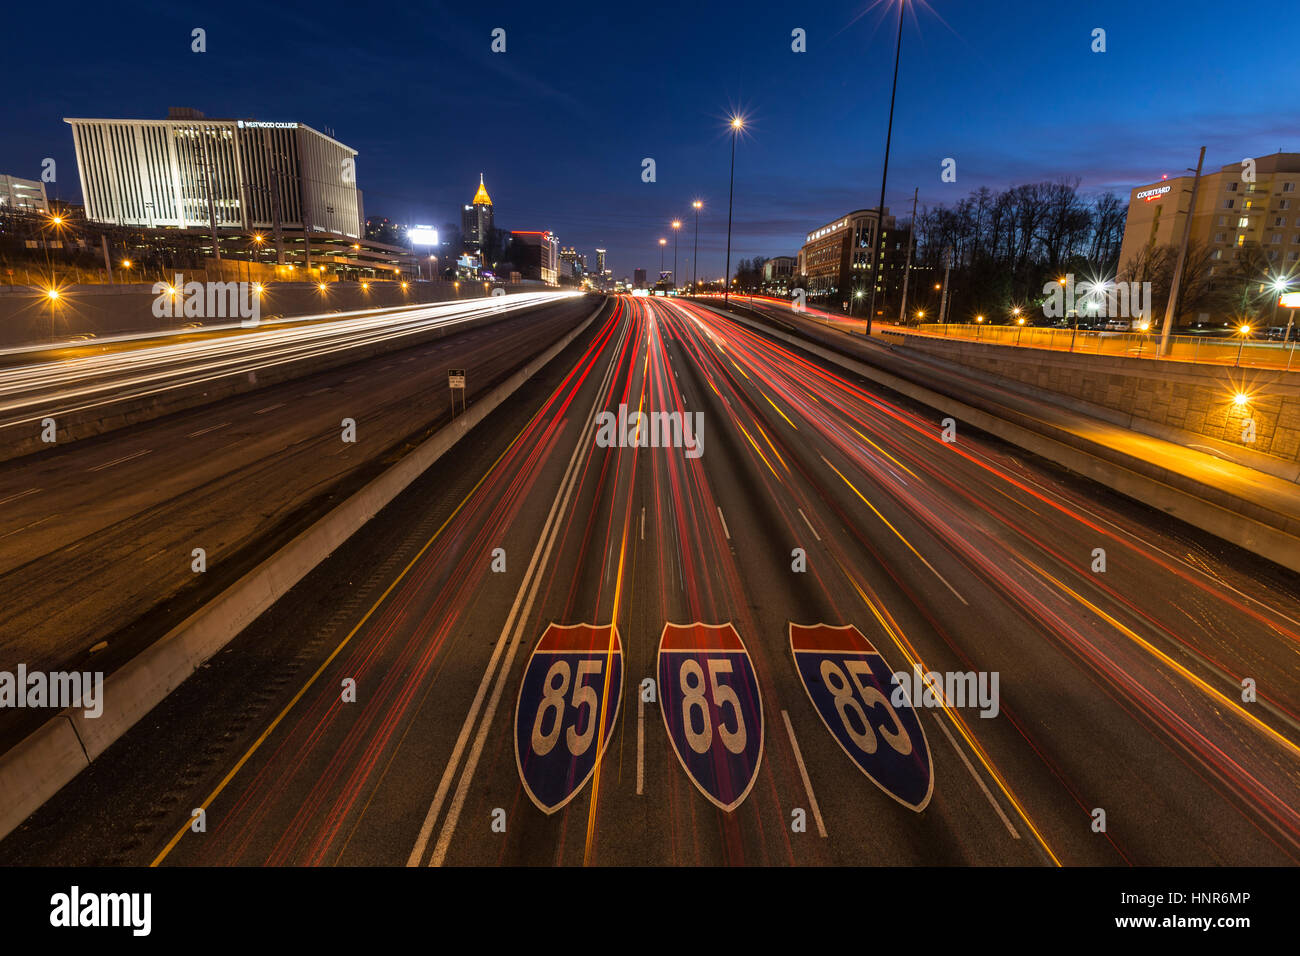 ATLANTA GEORGIA - 16. Februar 2014: Schnelle Verkehr auf Atlantas Interstate 85 Autobahn in der Nacht. Stockfoto